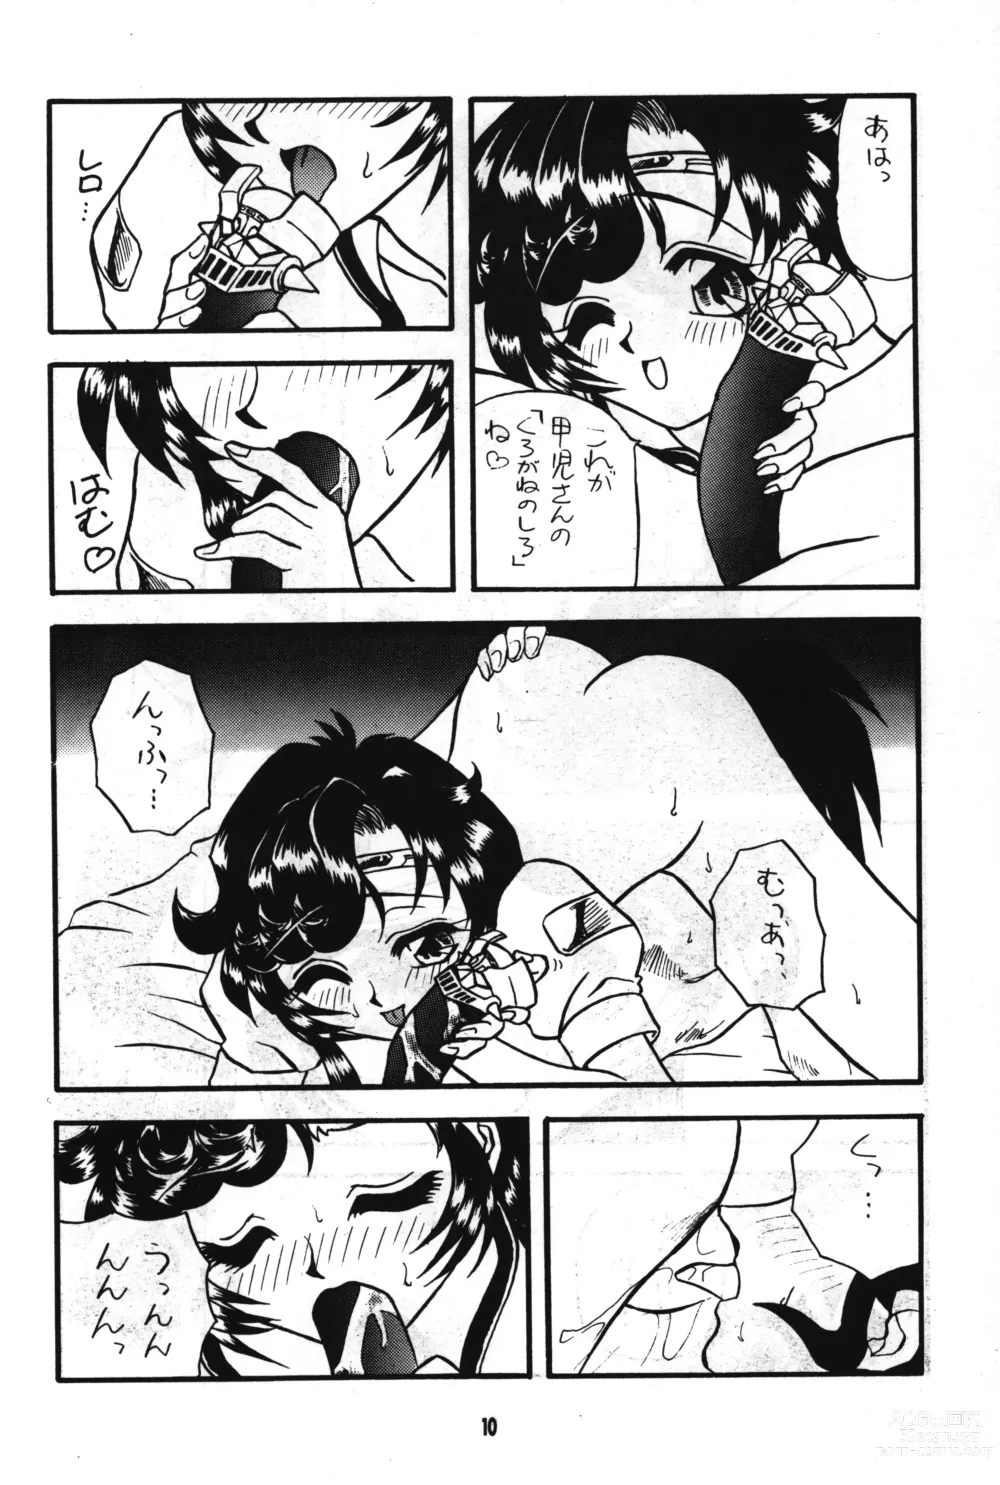 Page 9 of doujinshi Seigi wa Katsu no yo!!